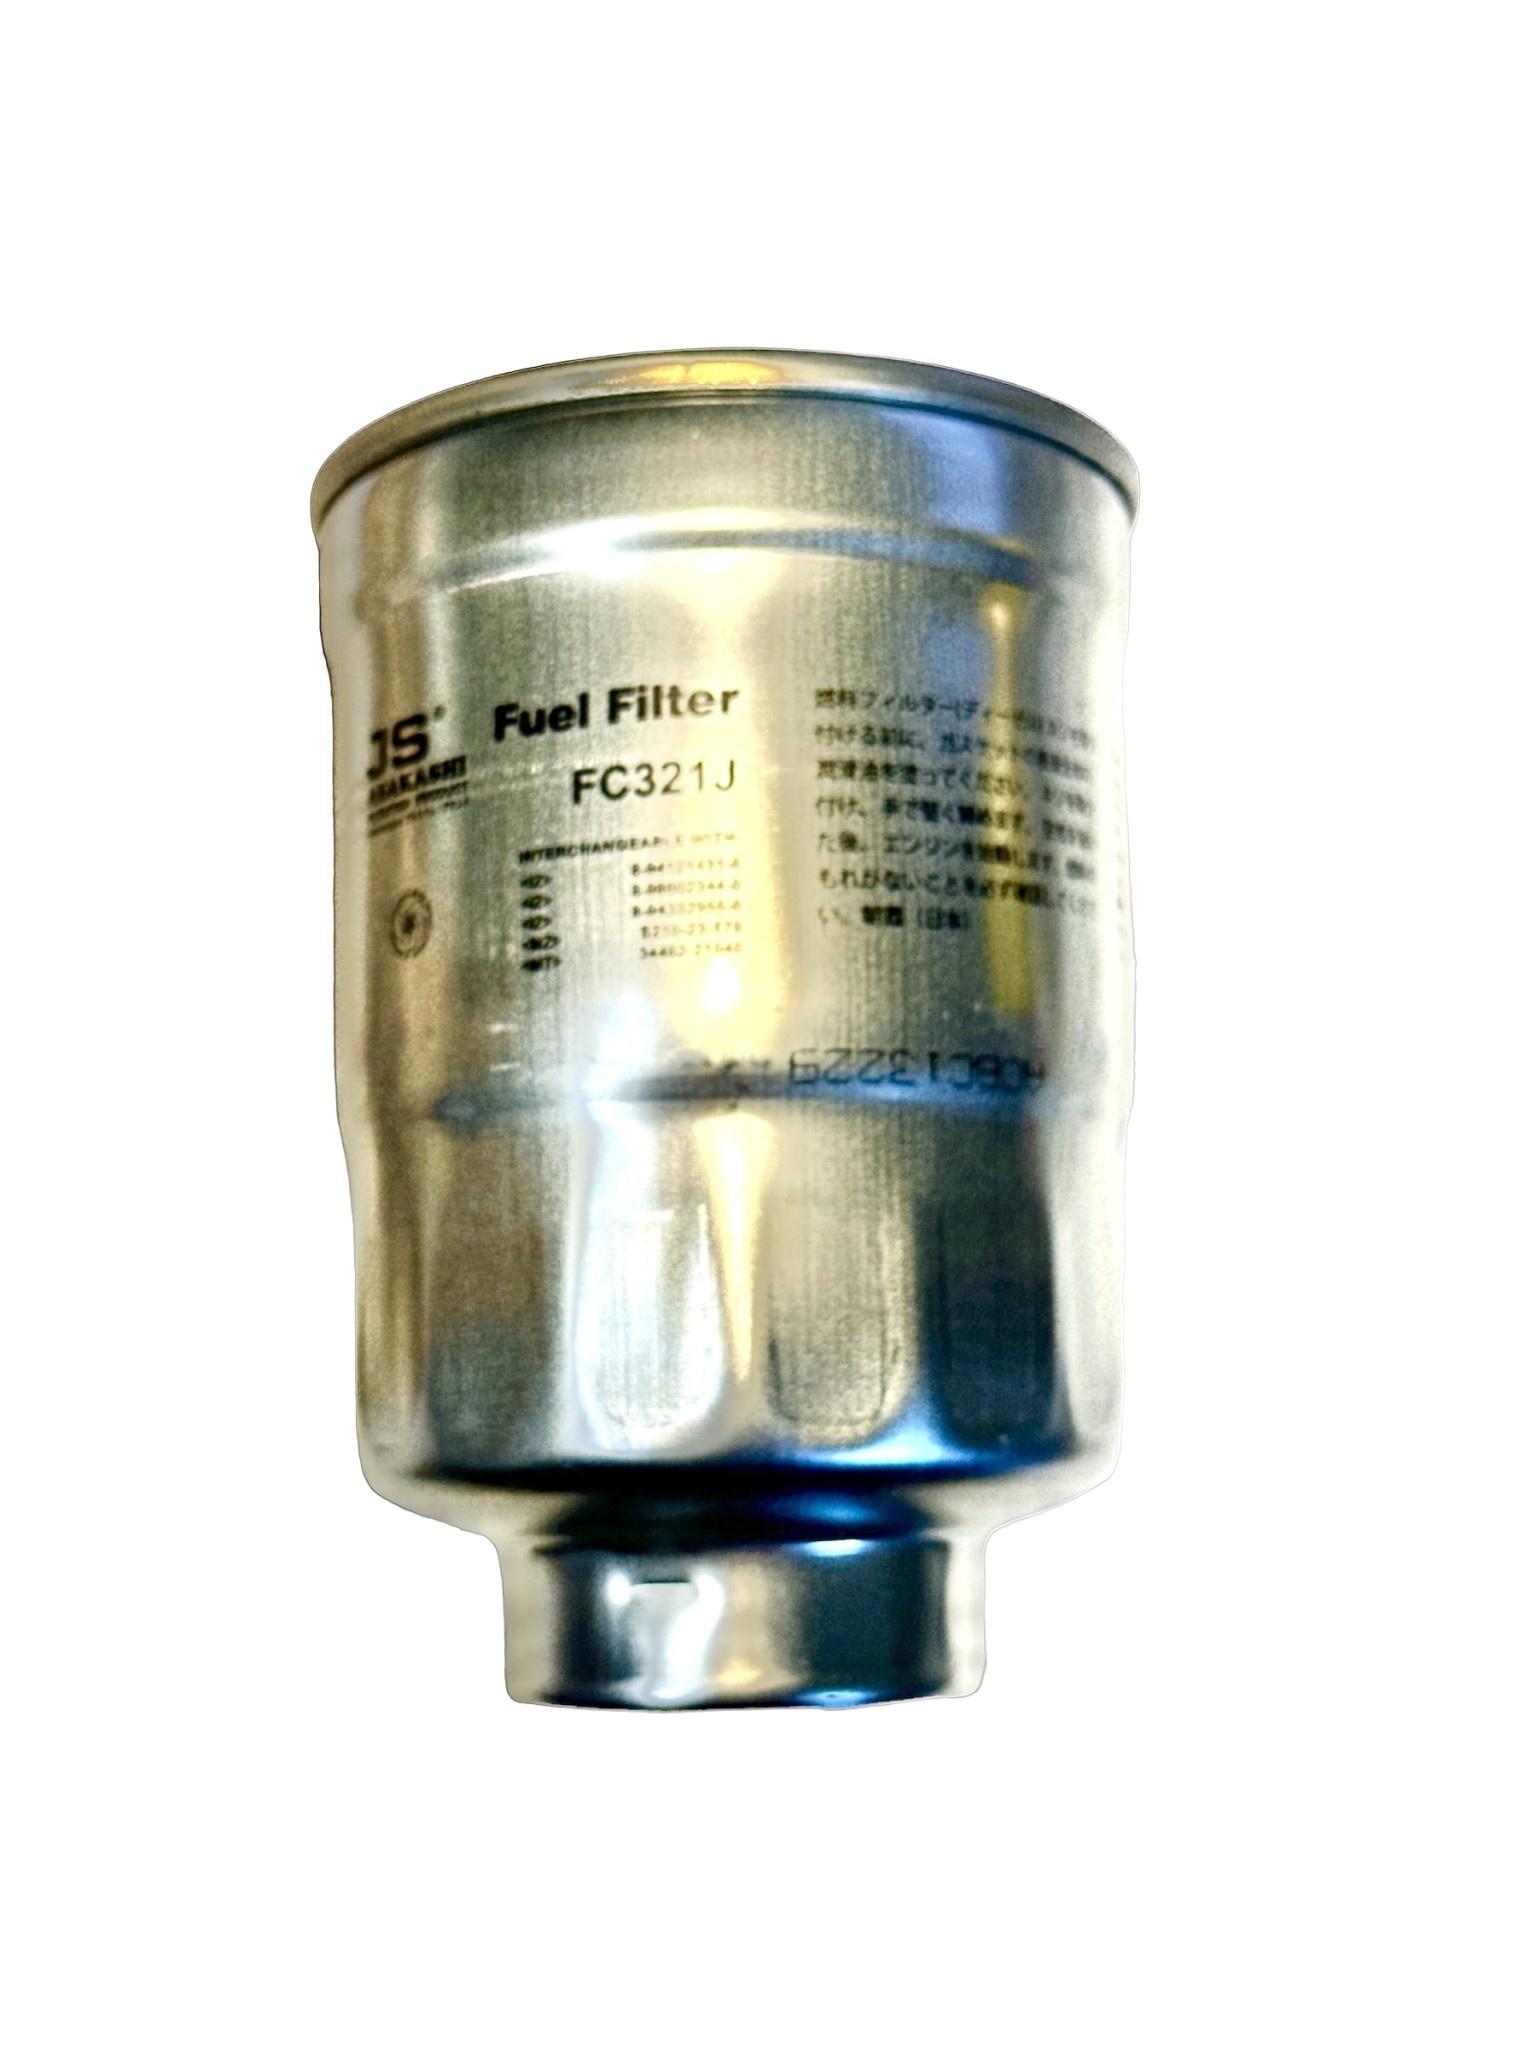 Fuel Filter, w/integral water separator - Delica L300, L400 & Pajero, Isuzu Bighorn 4JG2* (20.5x1.5mm x 36x1.5mm)